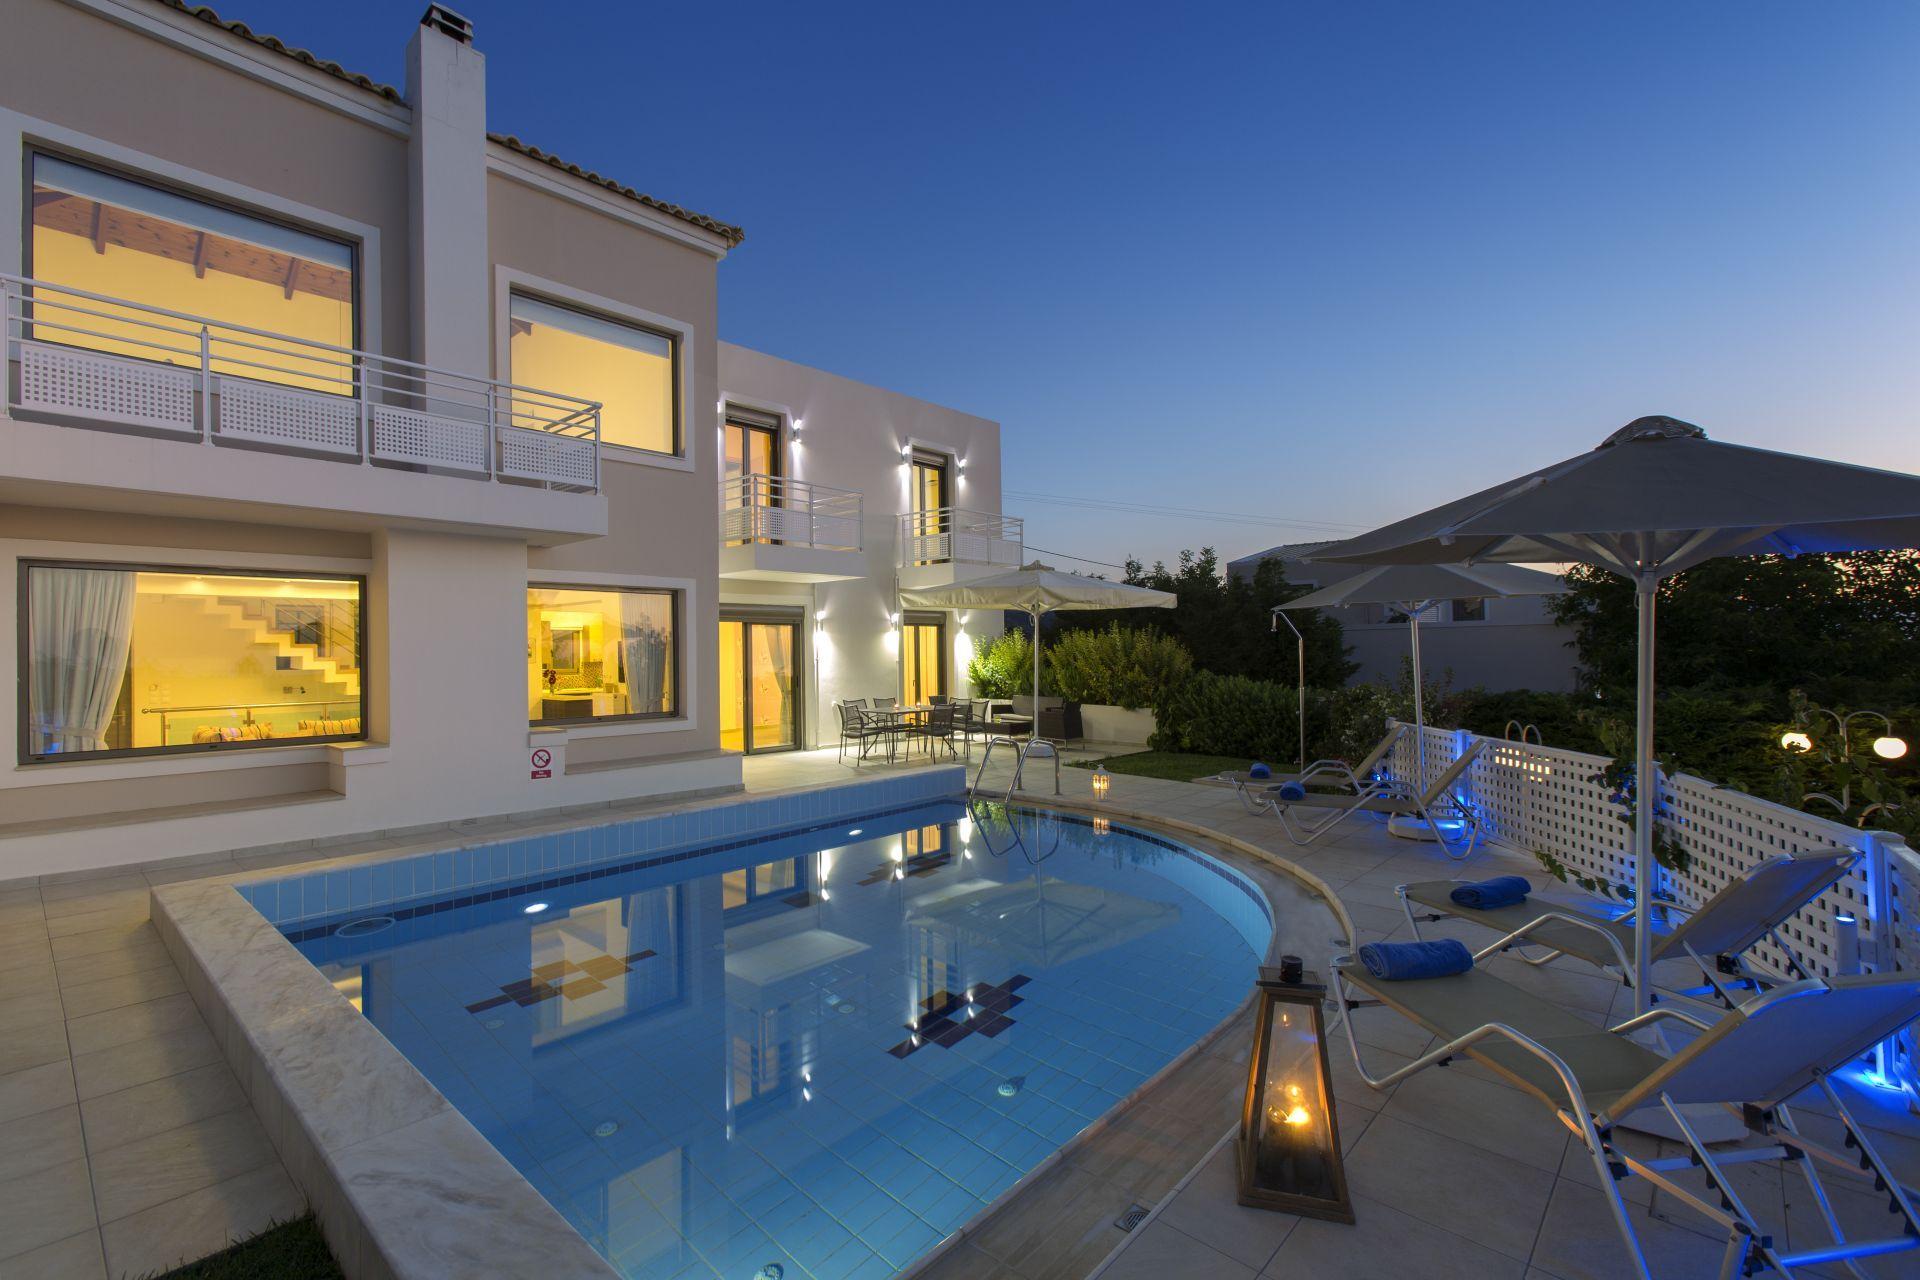 Ferienhaus mit Privatpool für 6 Personen  + 2 Ferienwohnung in Griechenland